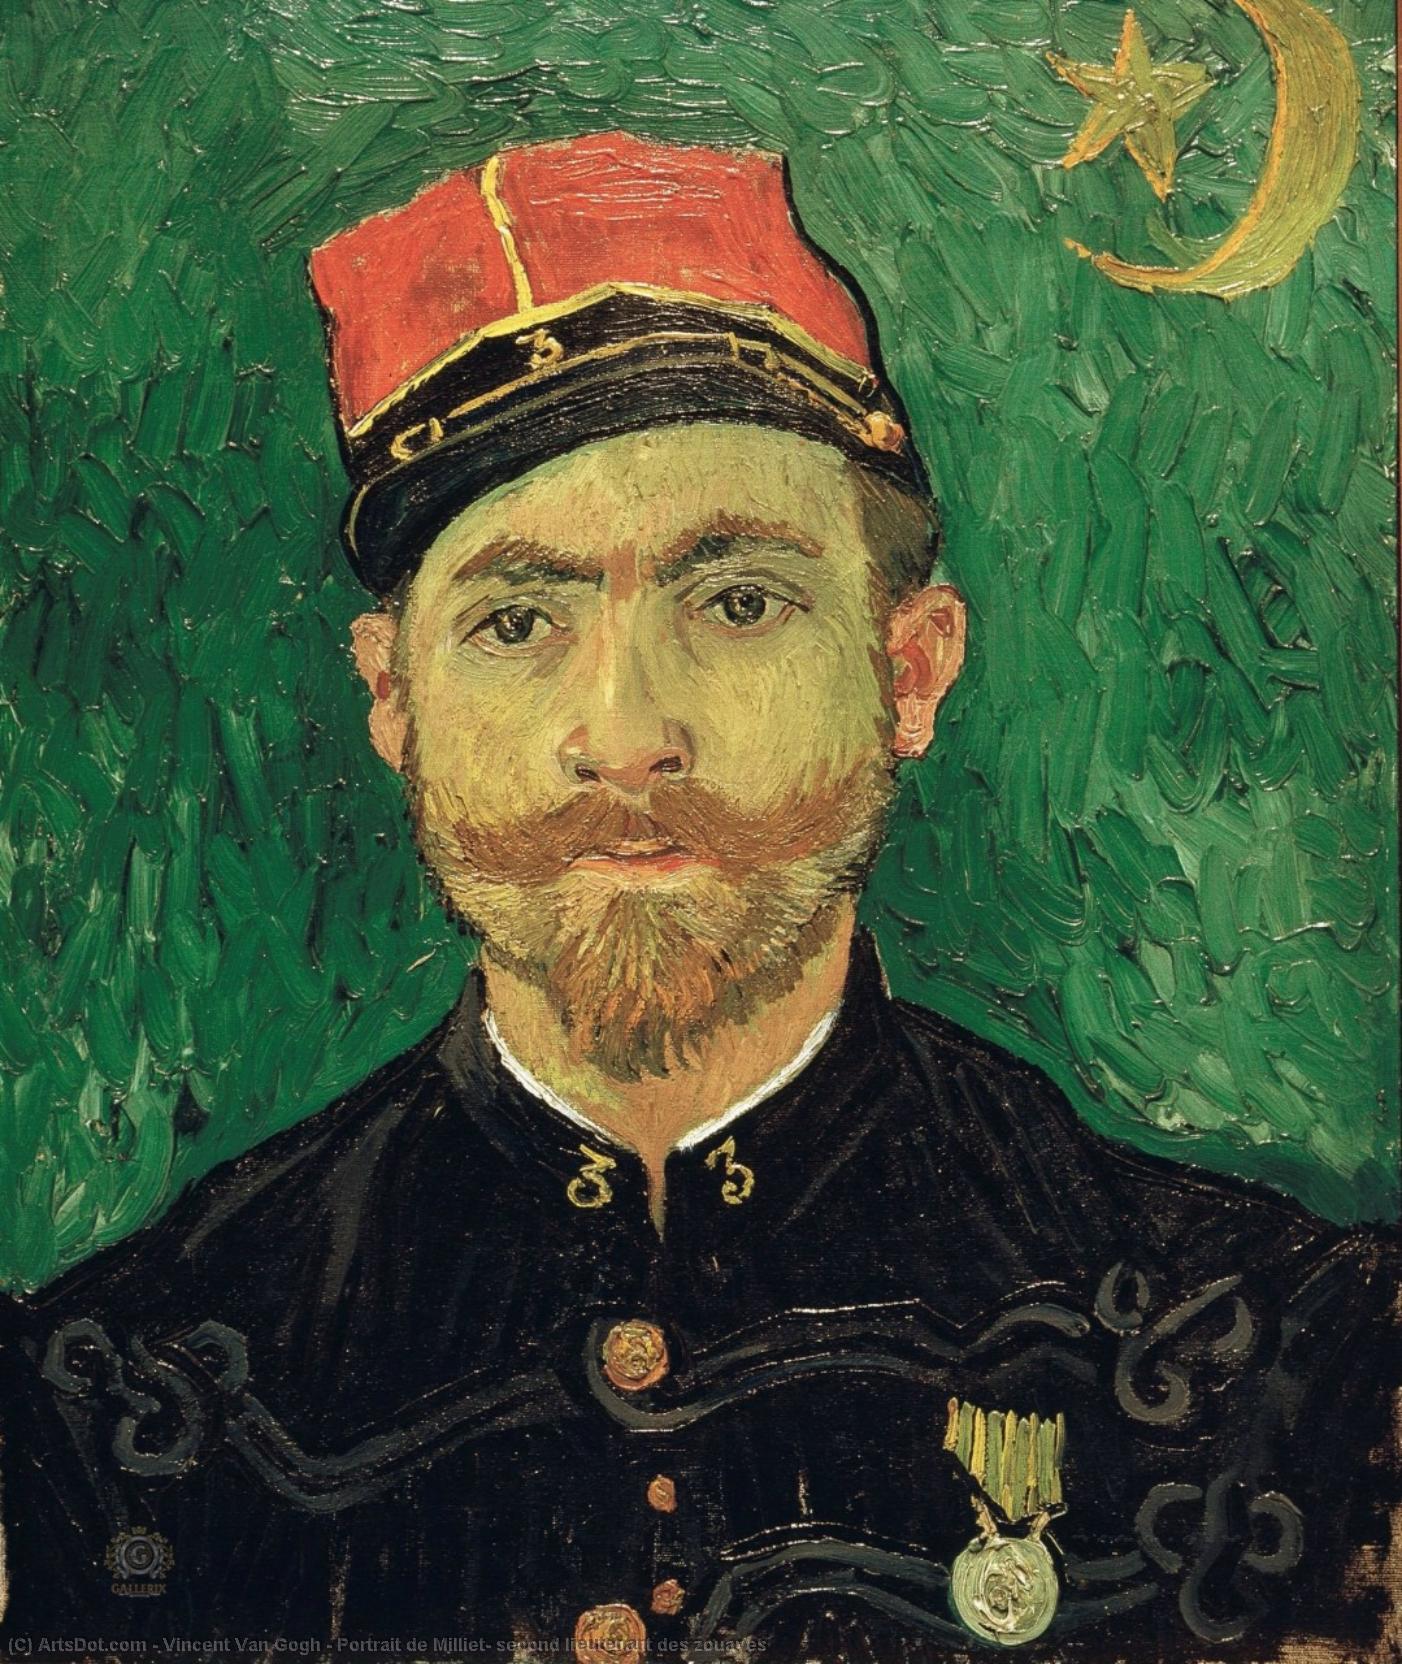 Wikioo.org - The Encyclopedia of Fine Arts - Painting, Artwork by Vincent Van Gogh - Portrait de Milliet, second lieutenant des zouaves